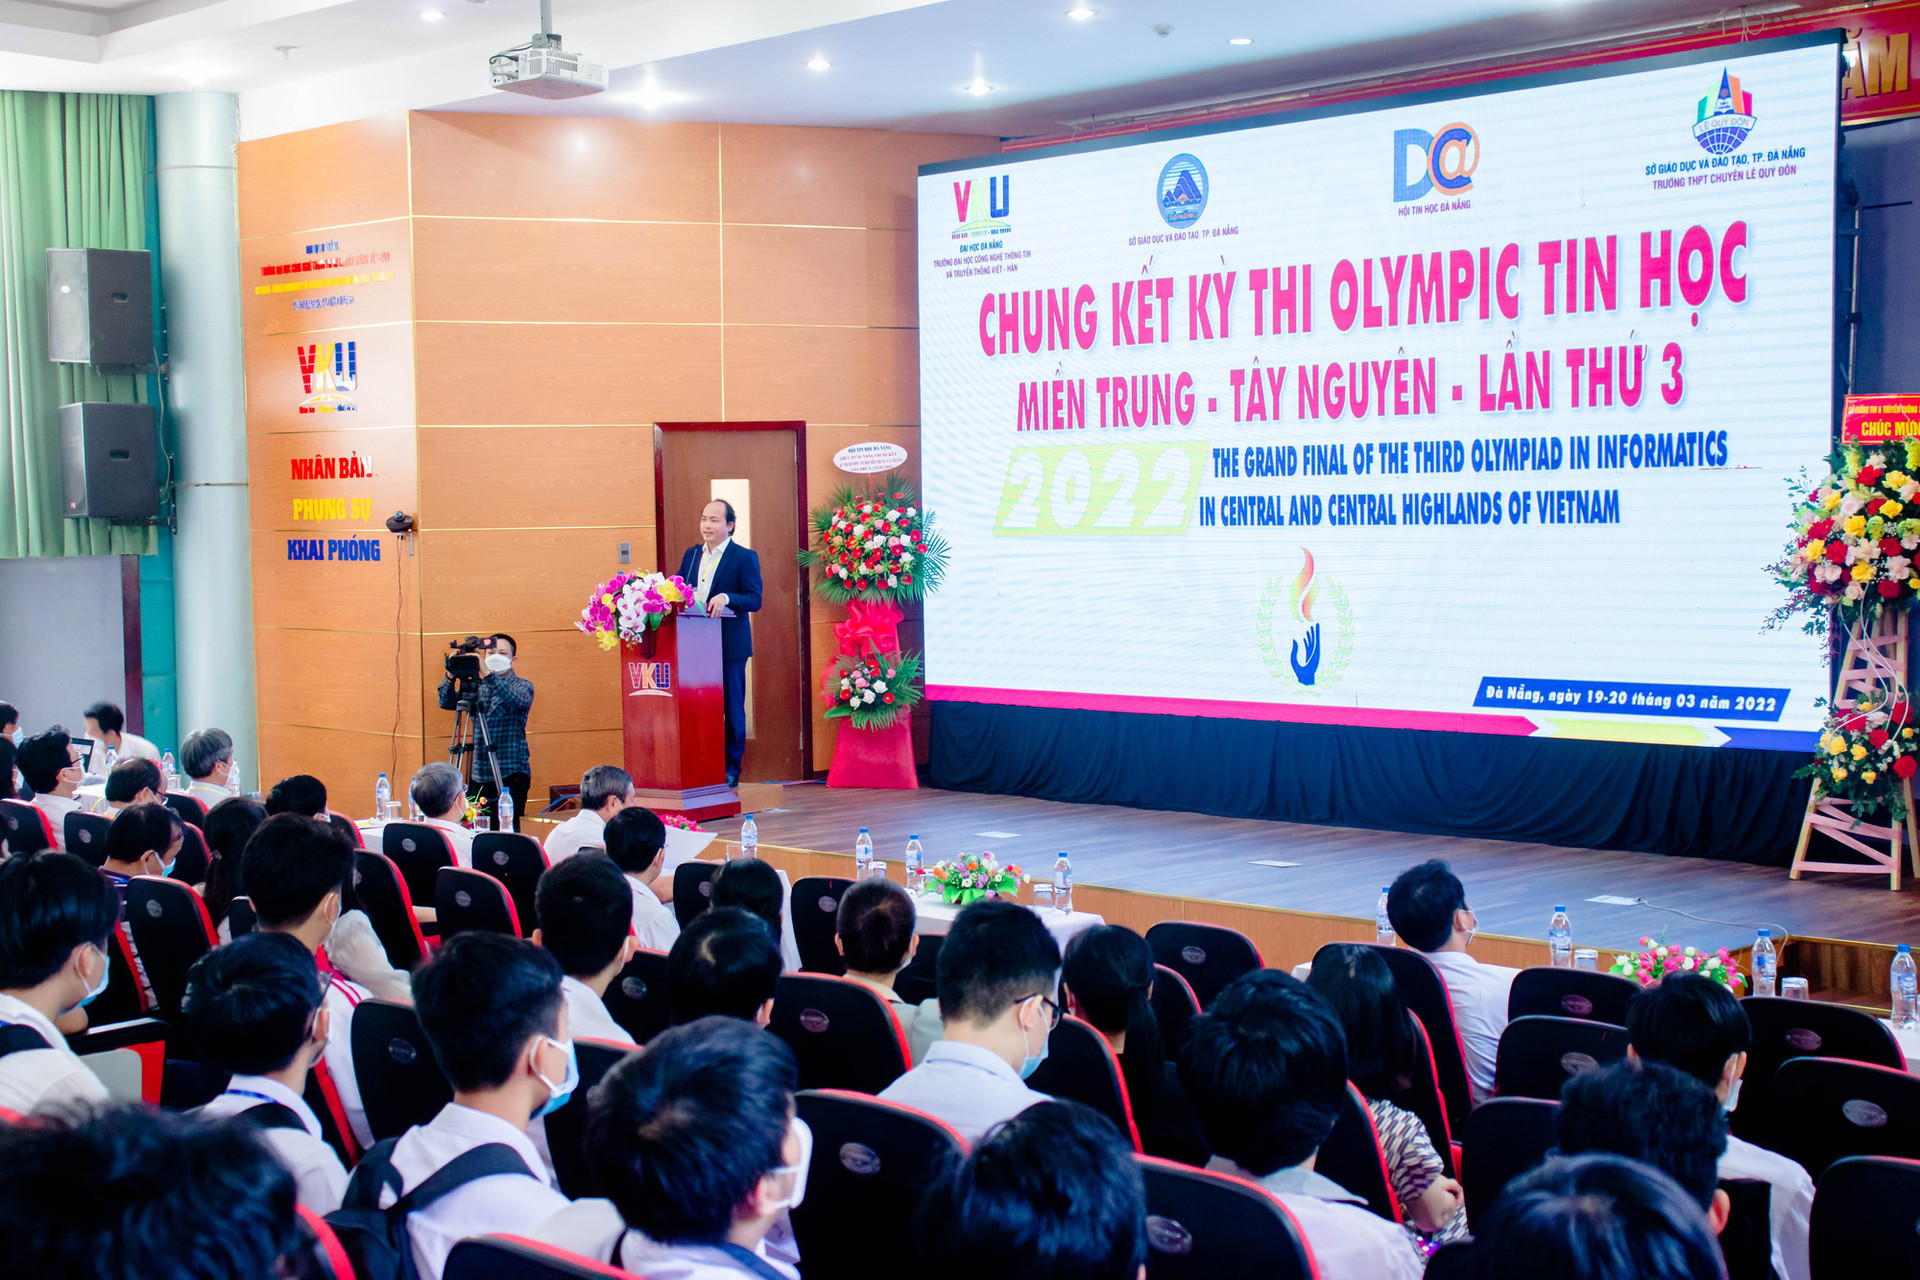 Nhiều học sinh đạt giải cao cuộc thi Olympic Tin học Miền Trung - Tây Nguyên năm 2022 - Ảnh 1.